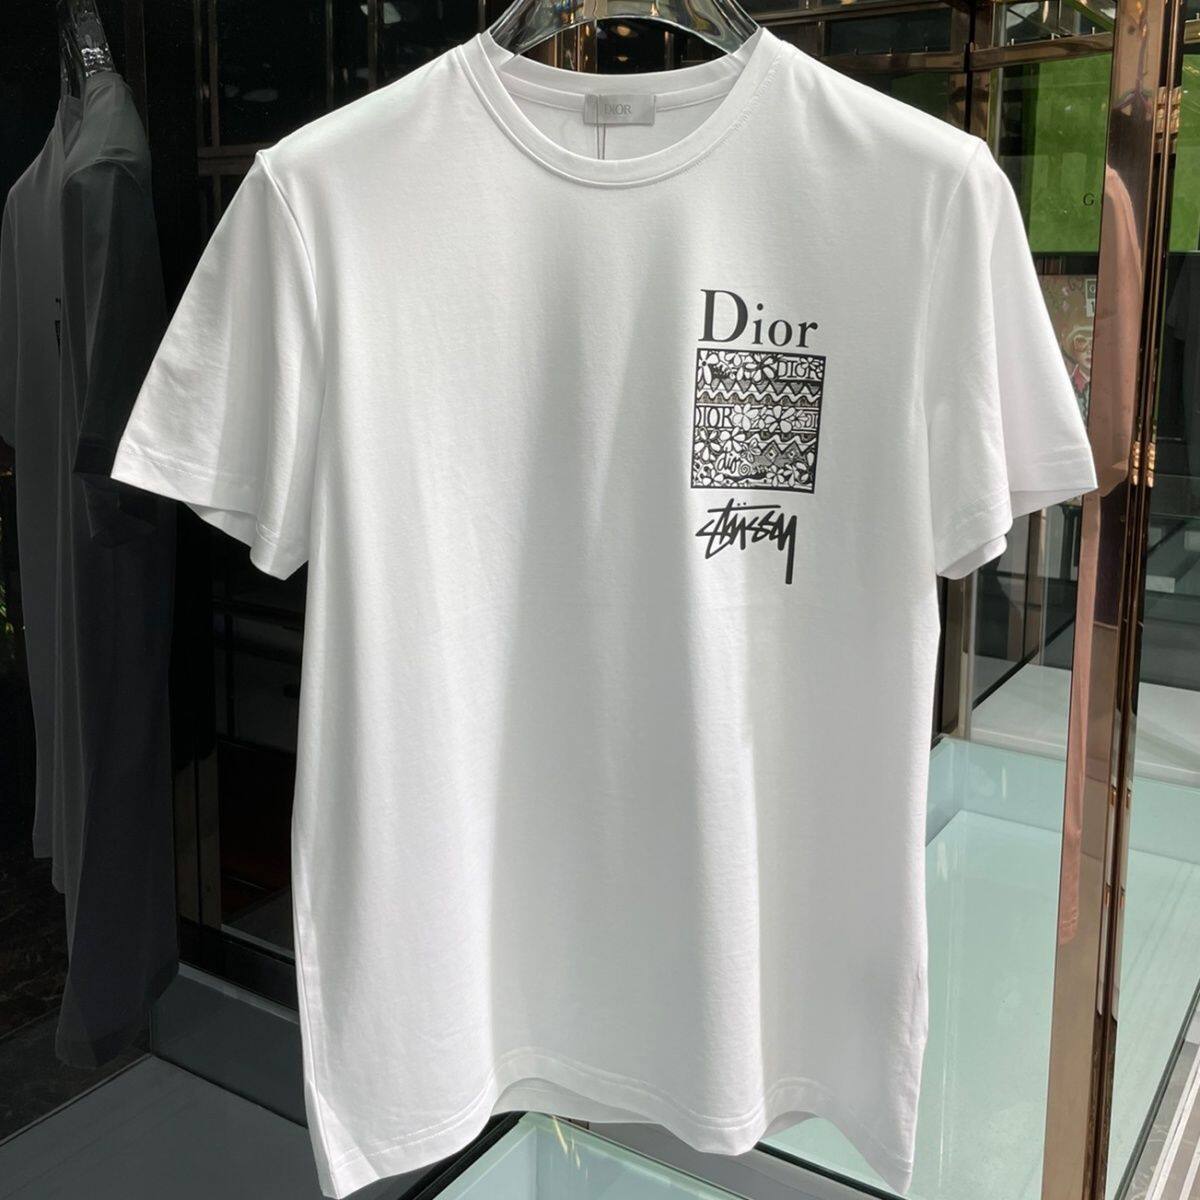 Tổng hợp Áo Dior Nữ Chính Hãng giá rẻ bán chạy tháng 72023  BeeCost